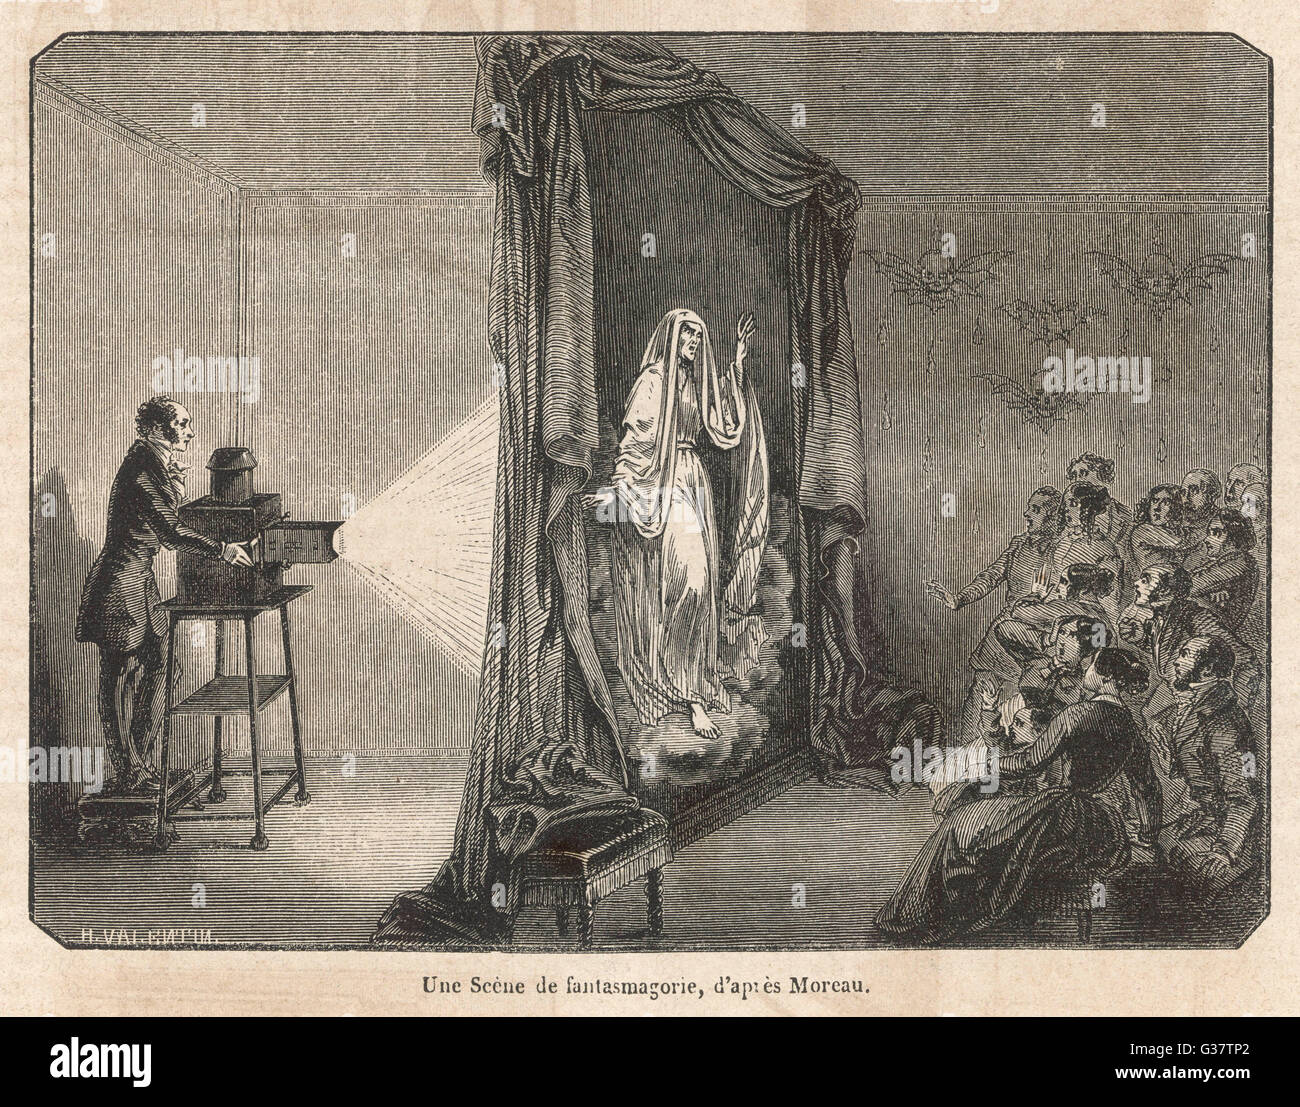 Por Robertson fantasmagoría, creada en el 1790, continúa para asustar a los espectadores la mitad de un siglo más tarde Fecha: 1840 Foto de stock